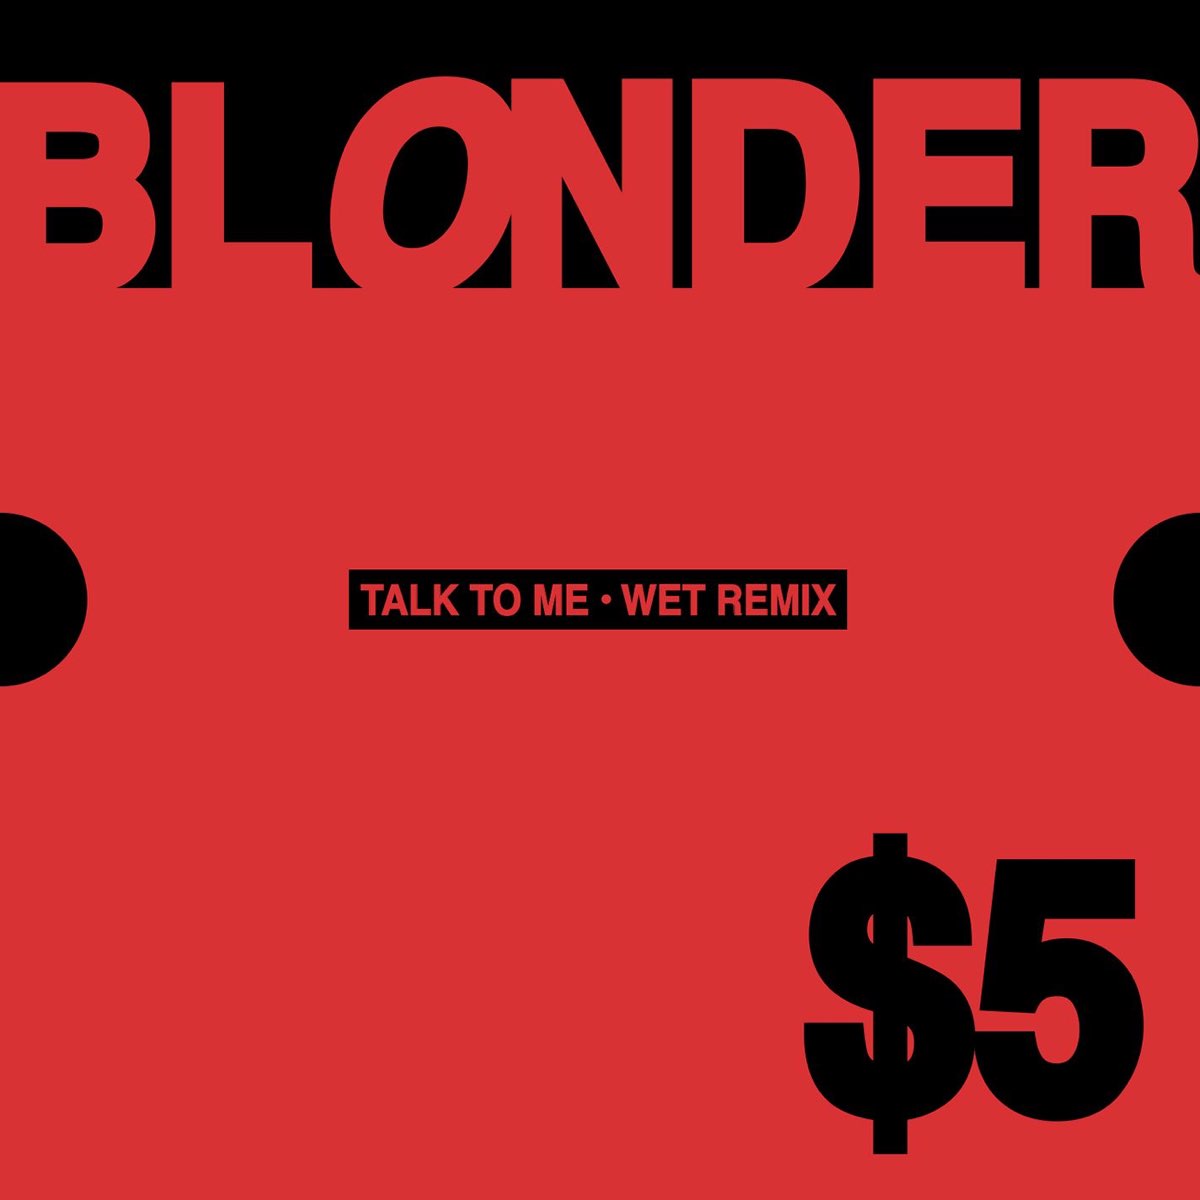 Blonde remix. Talk to me песня. Wet Remix. Talk to me.